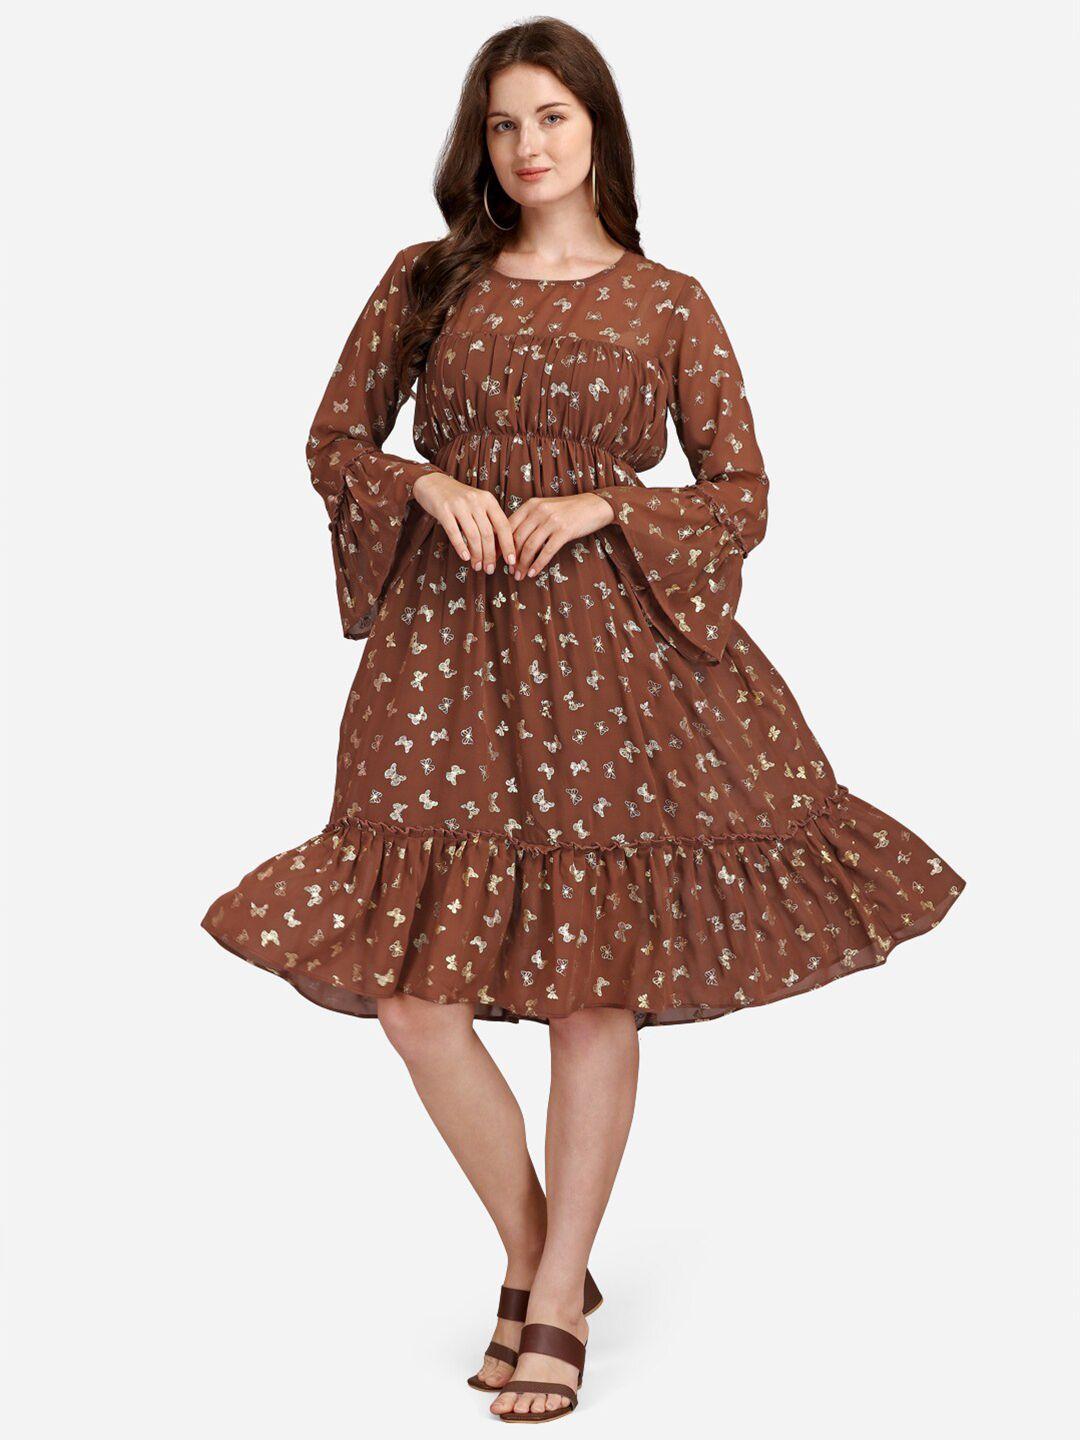 gufrina brown georgette dress